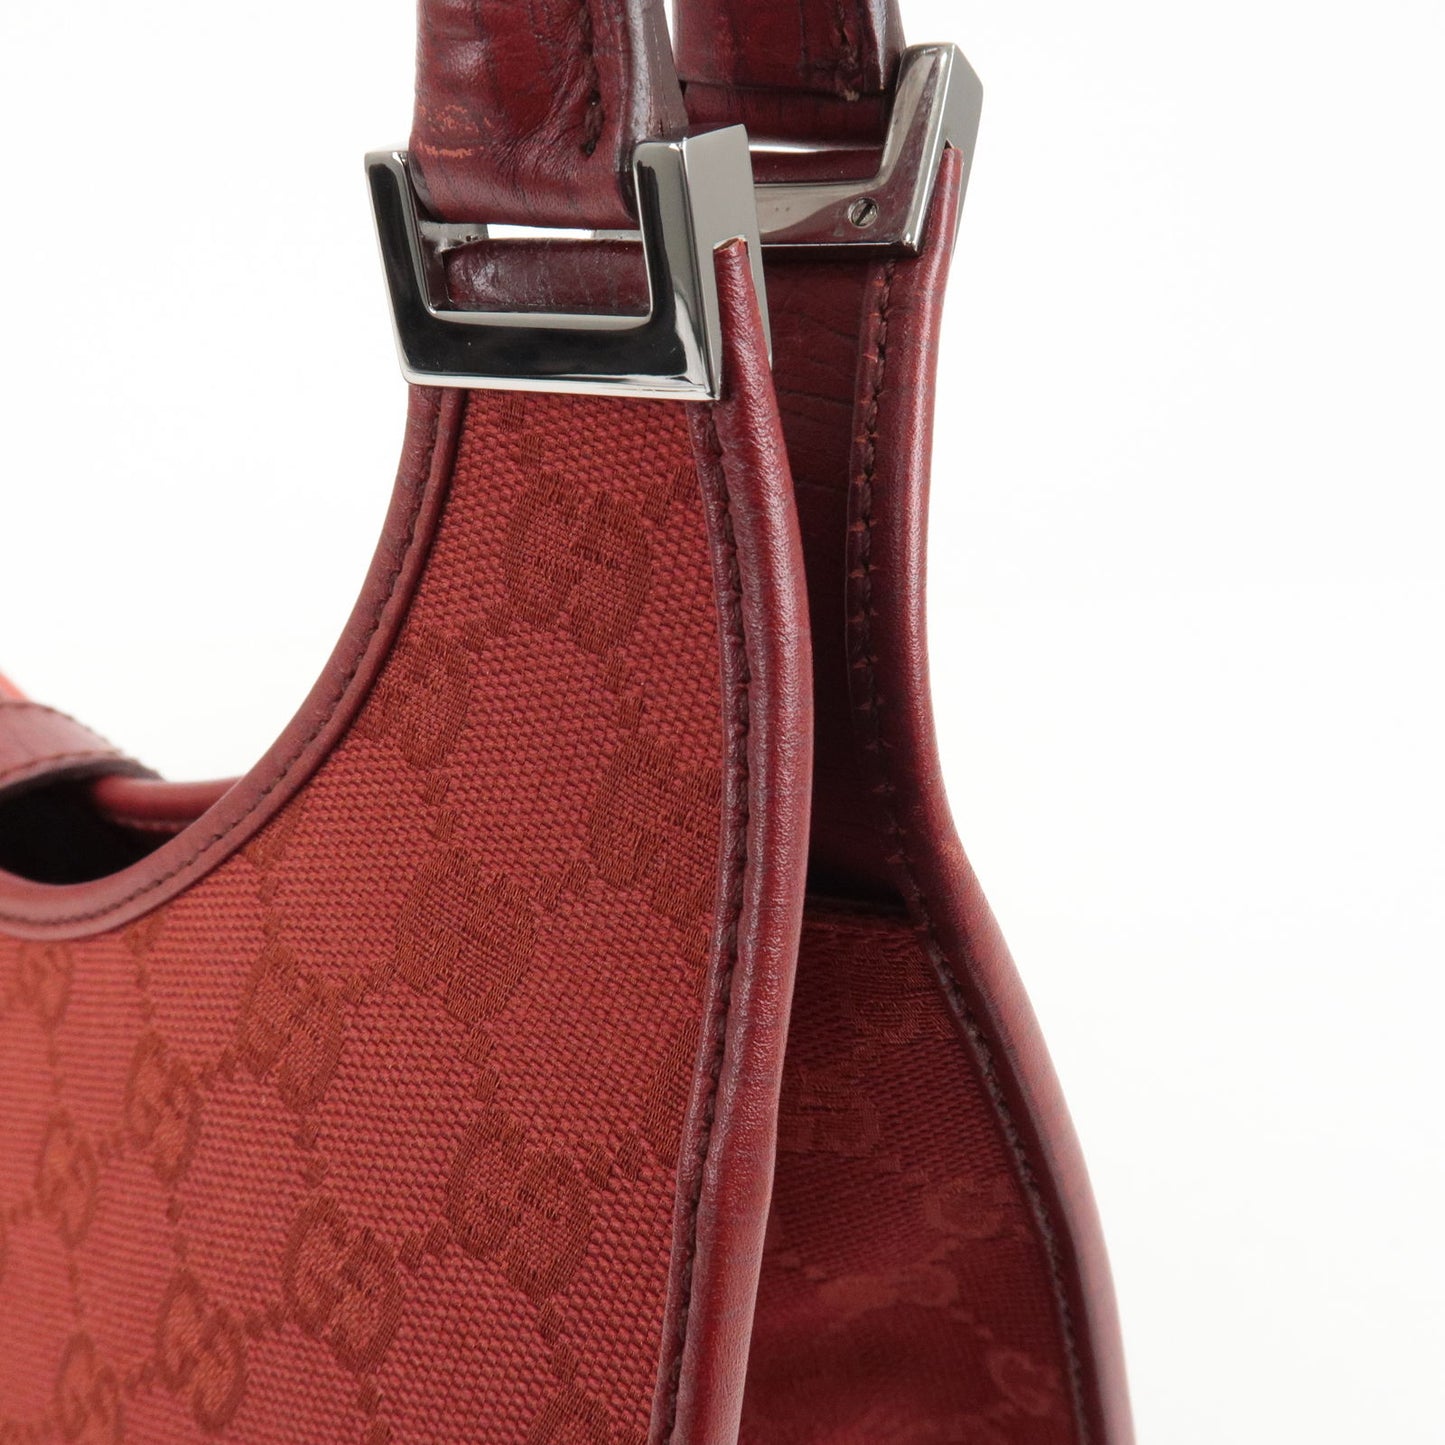 GUCCI Jacki GG Canvas Leather Shoulder Bag Hand Bag Red 01719